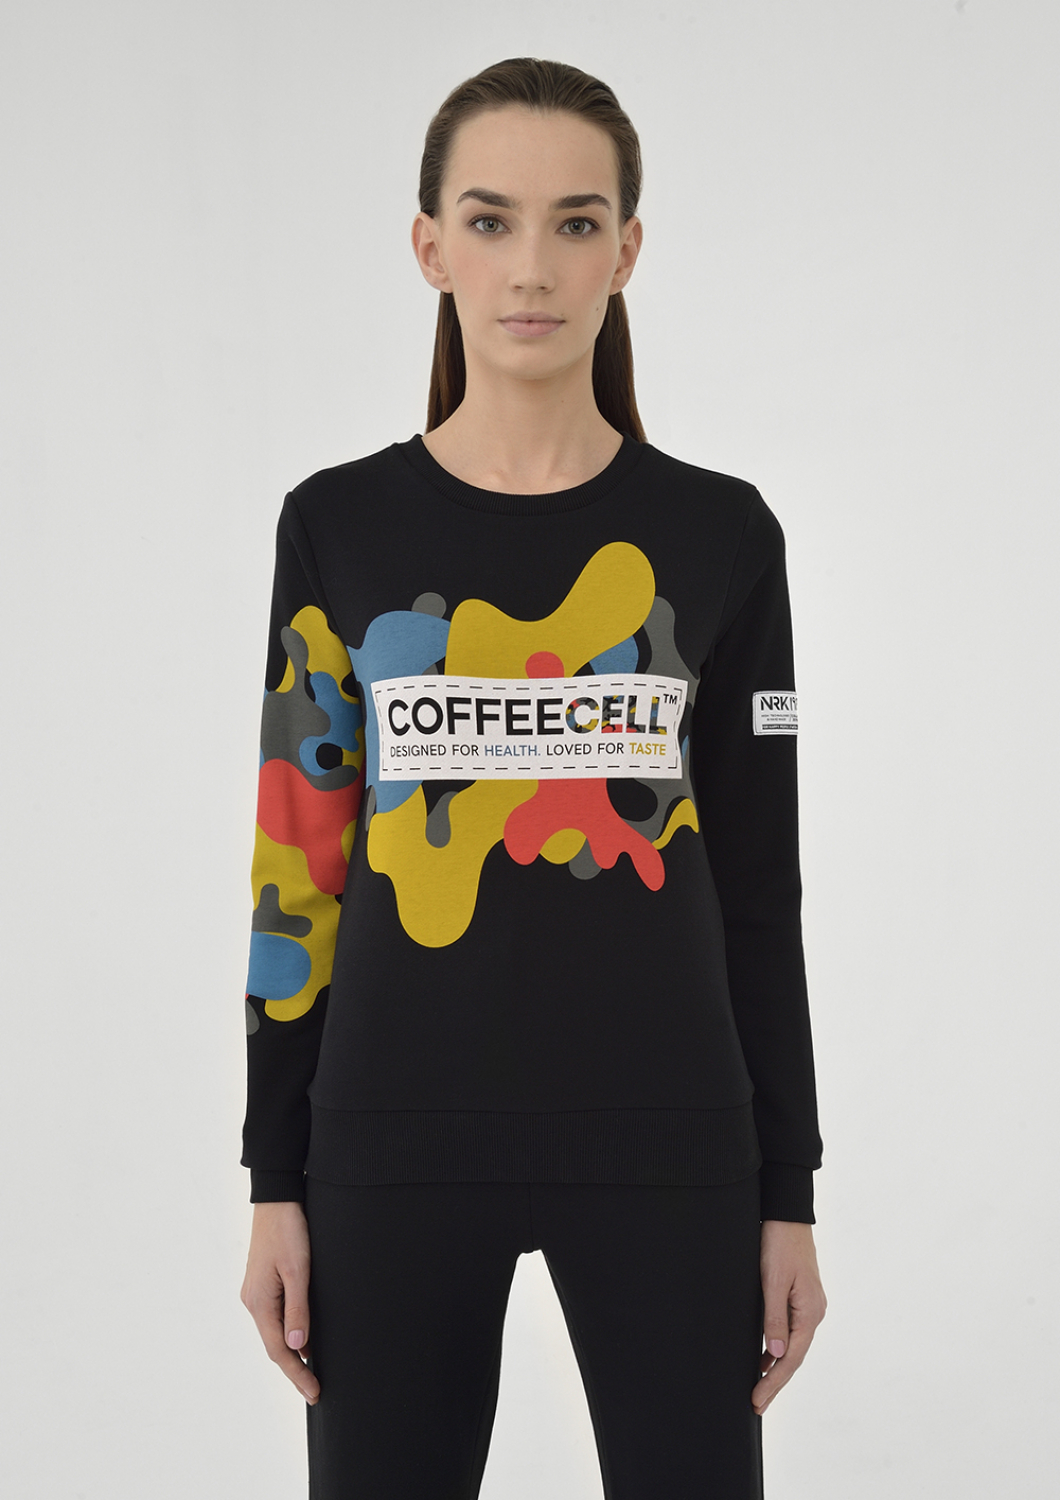 Sweatshirt COFFEECELL. Female.